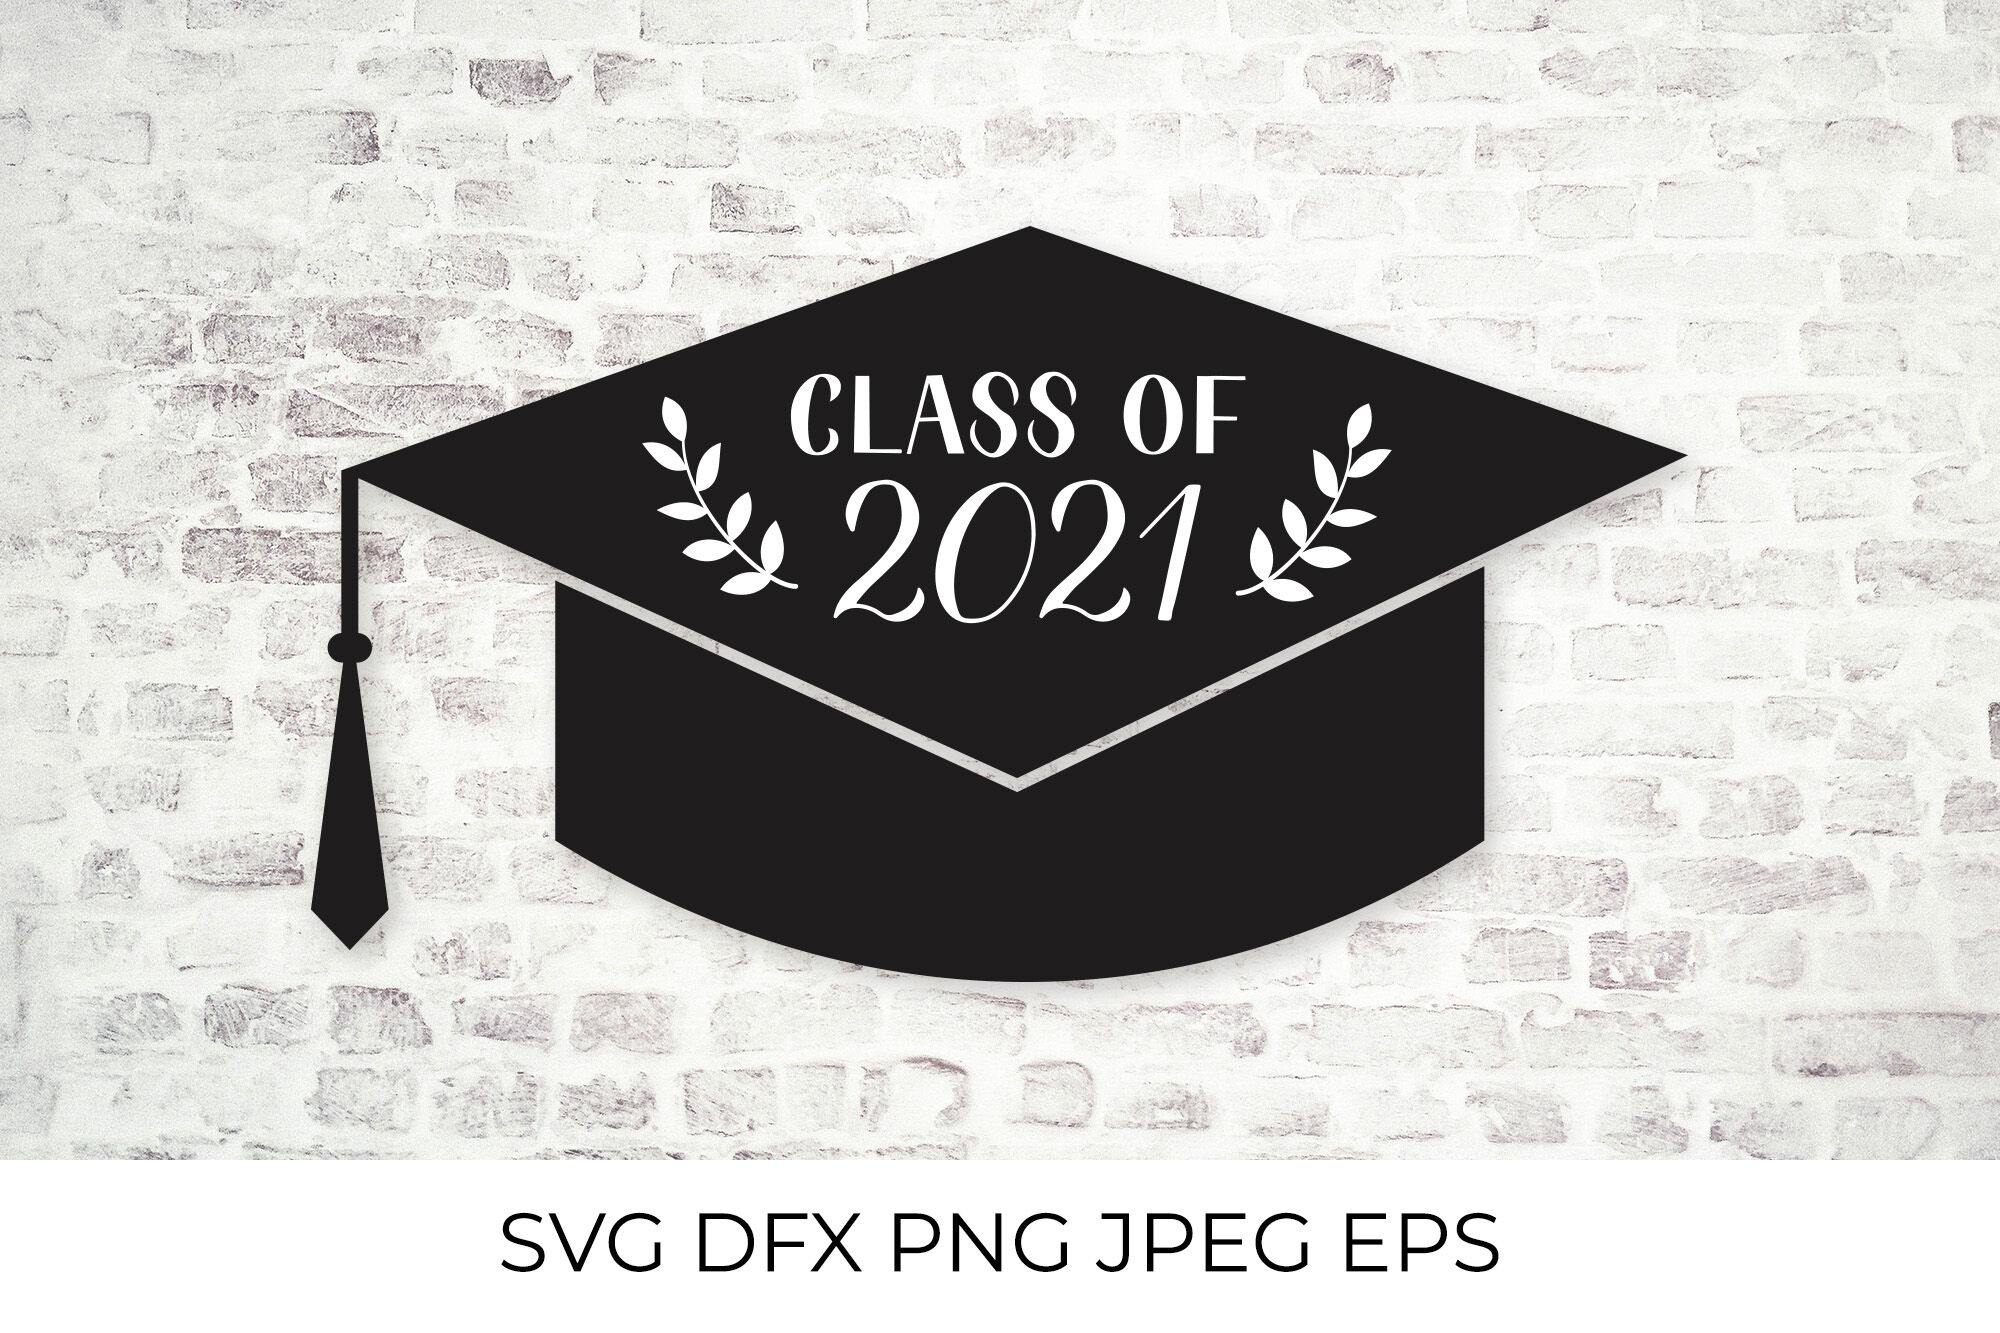 You did it graduation svg 2021 graduation cap svg class of 2021 svg Graduation svg class of 2021 for cricut